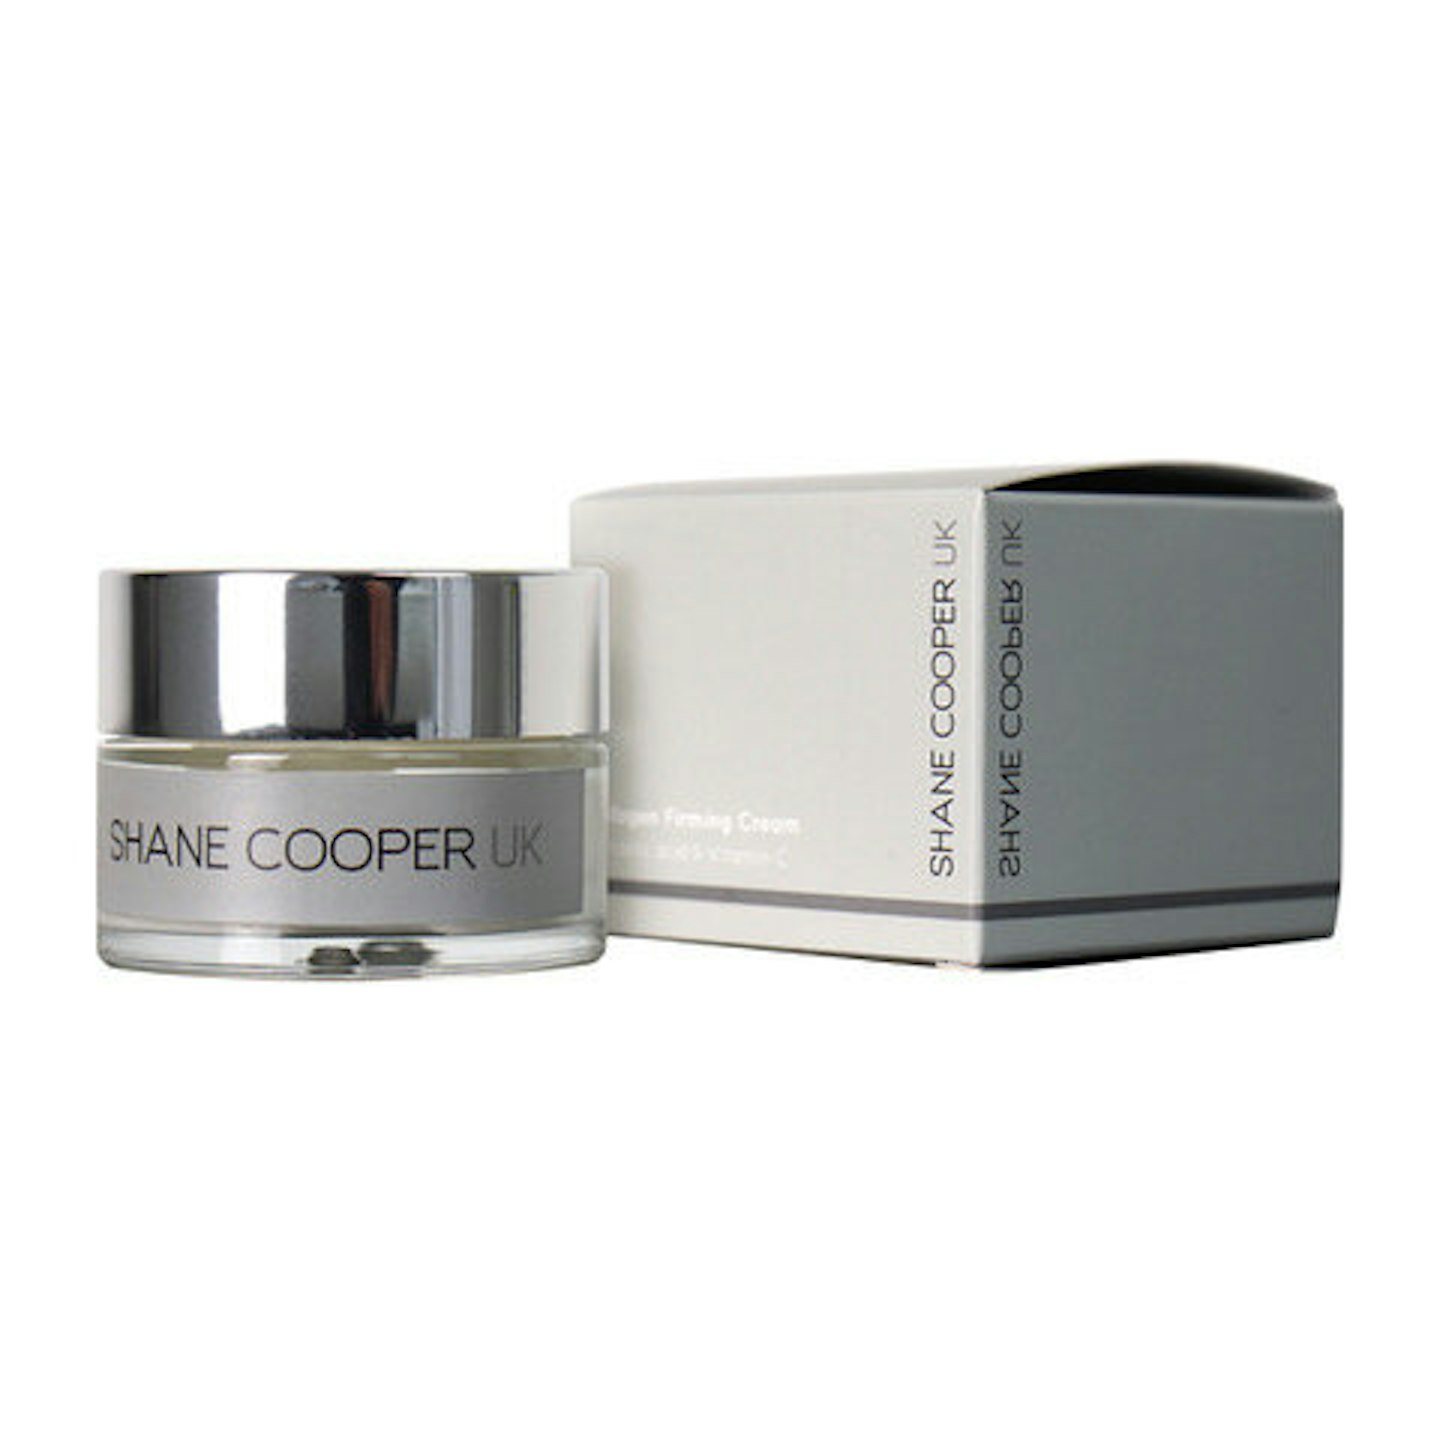 Shane Cooper Collagen Firming Cream,